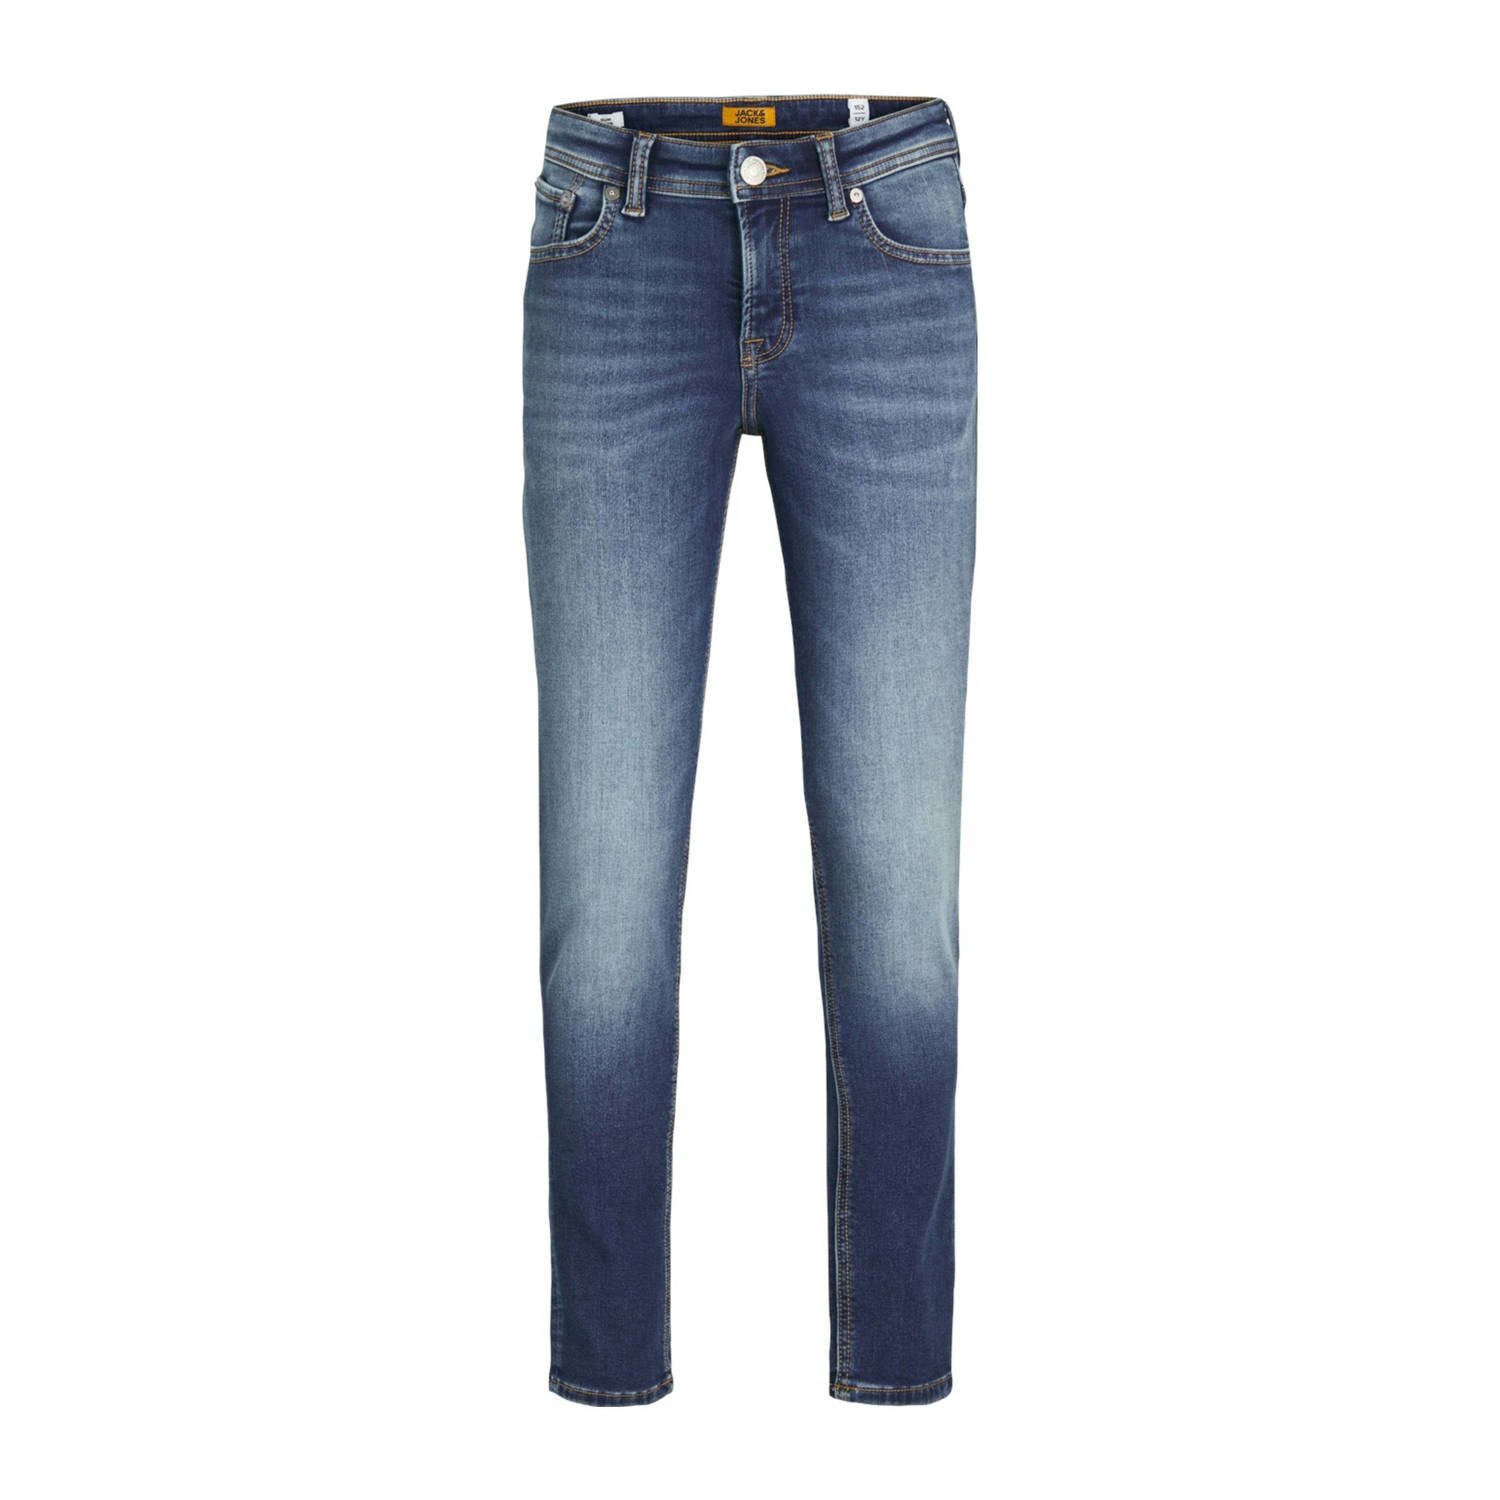 Jack & jones JUNIOR slim fit jeans JJIGLENN JJORIGINAL blue denim 2 Blauw Stretchdenim 128